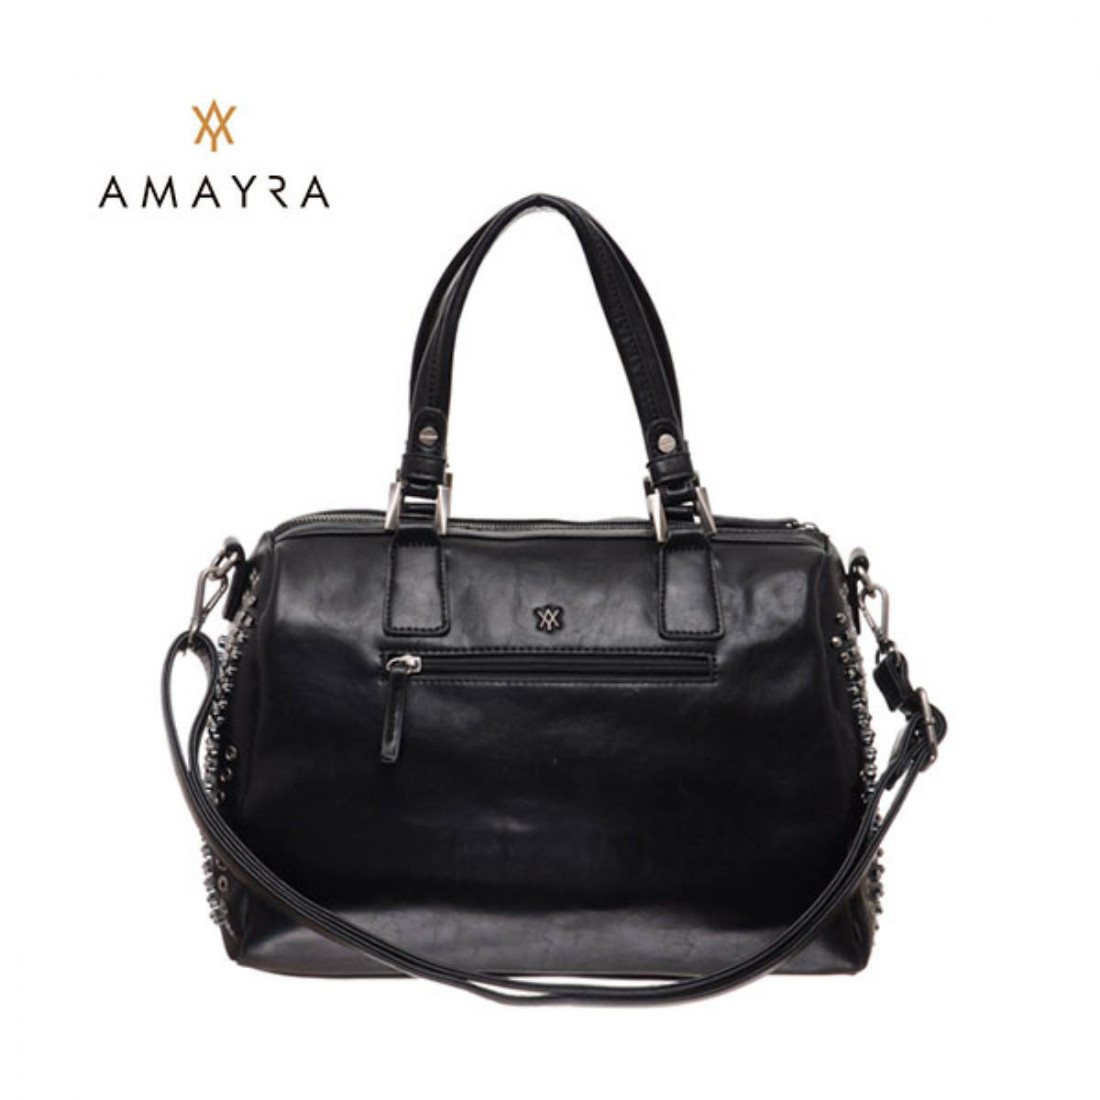 Amayra En stockin.com.ar! # ¡Mejores Precios Siempre! #